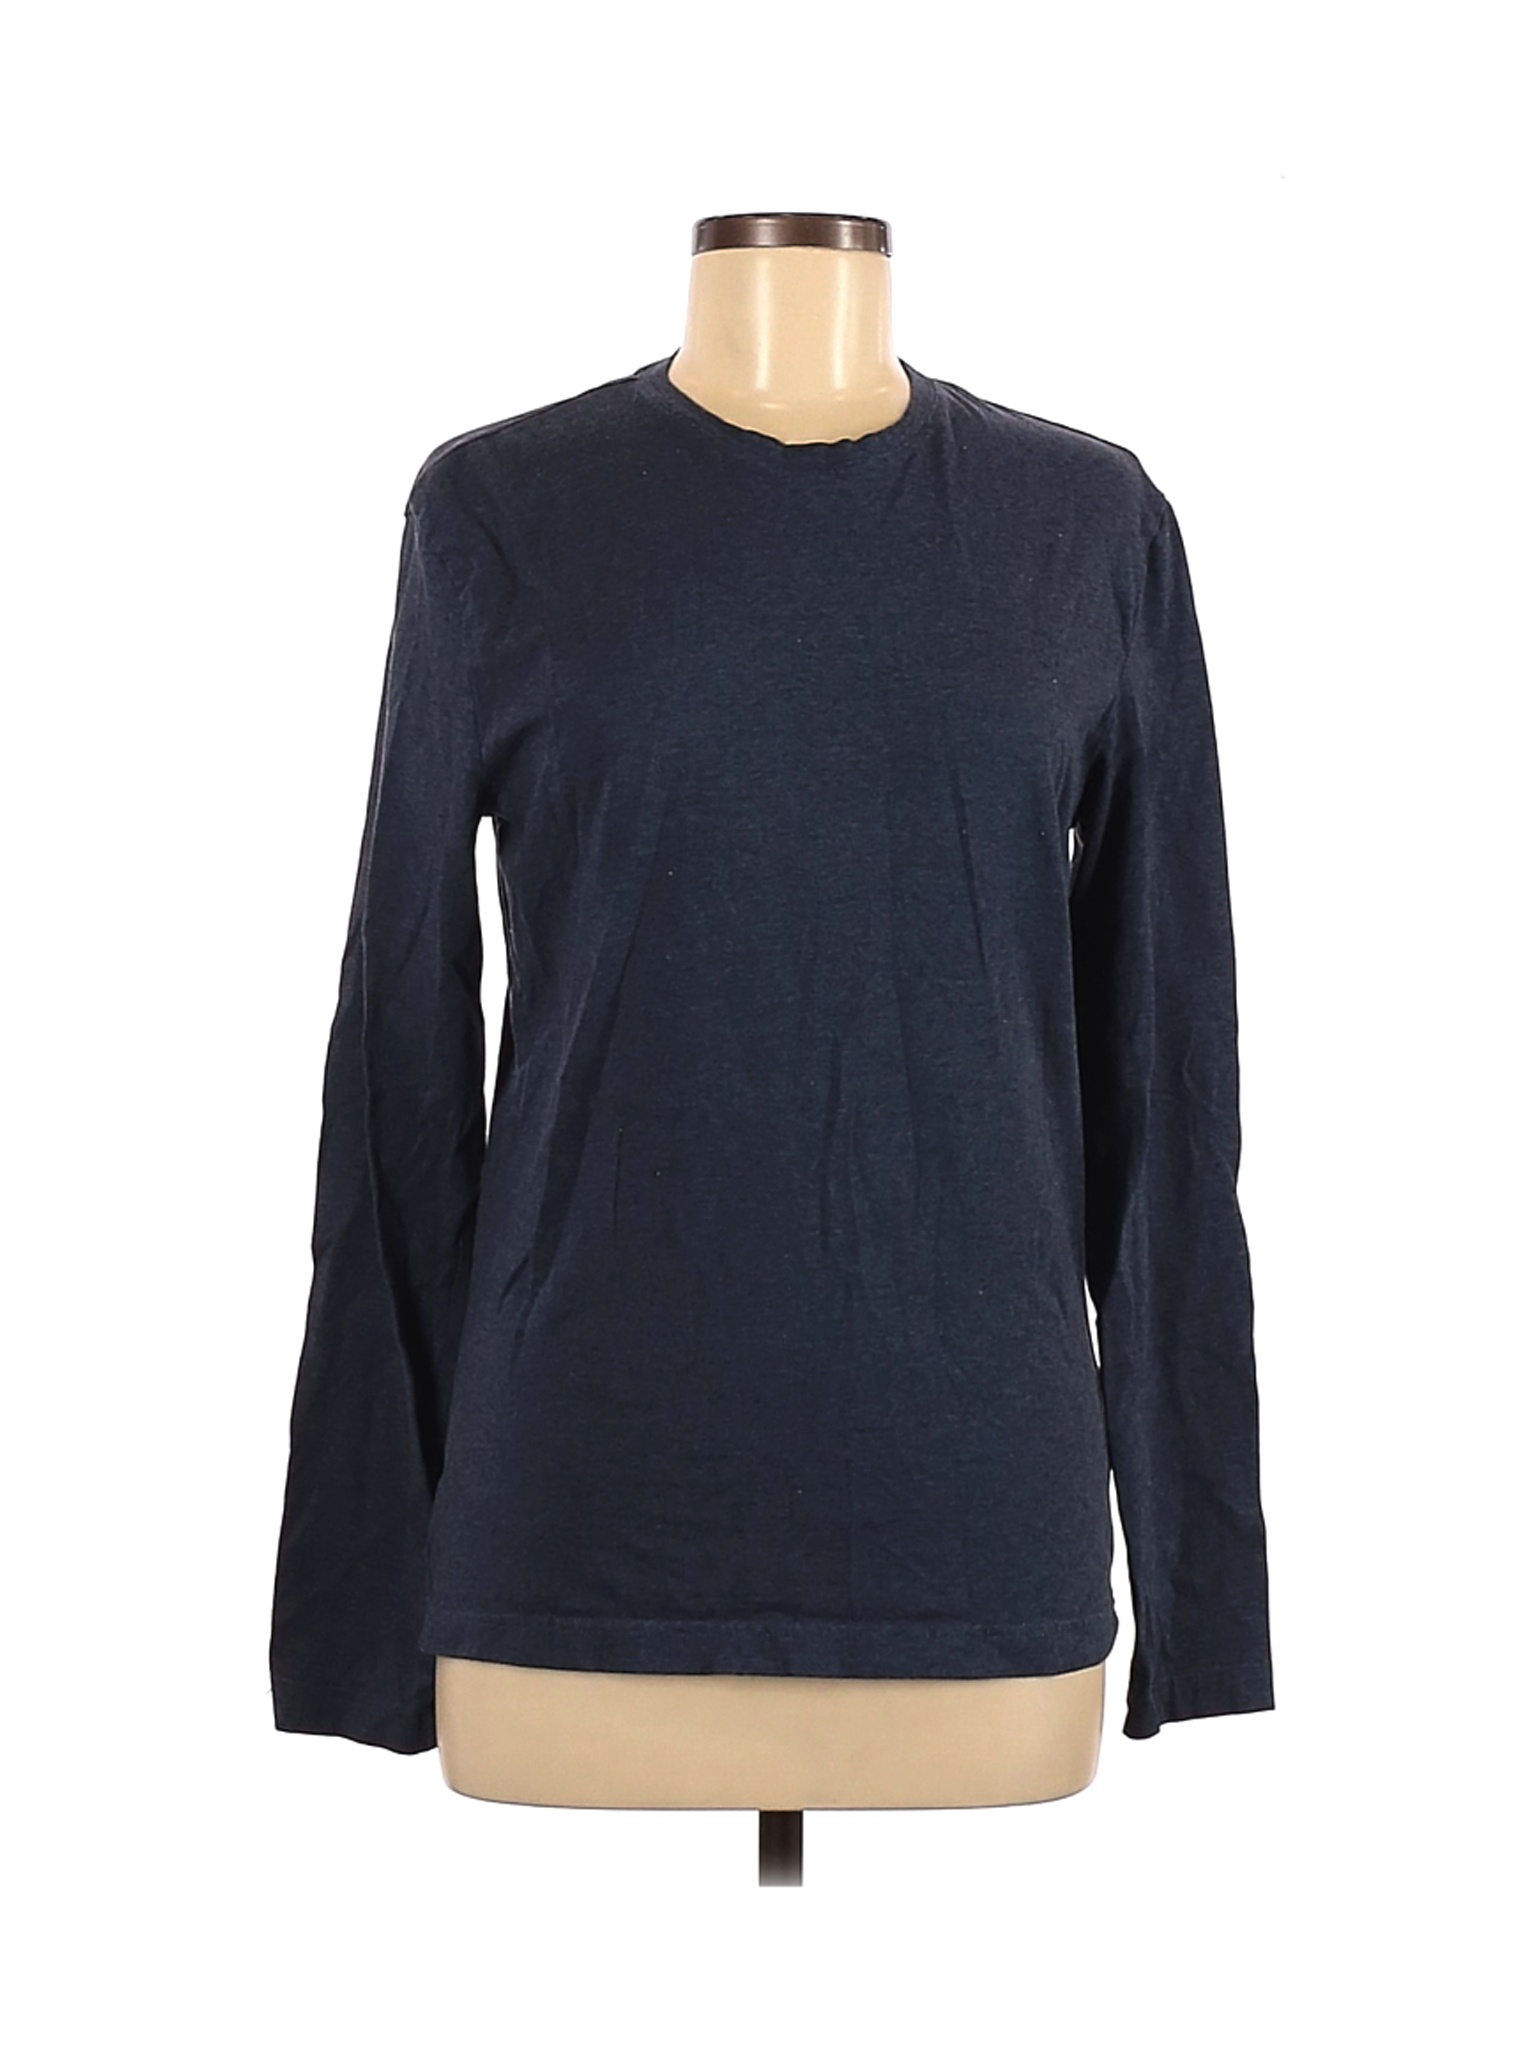 H&M Women Blue Long Sleeve T-Shirt M | eBay